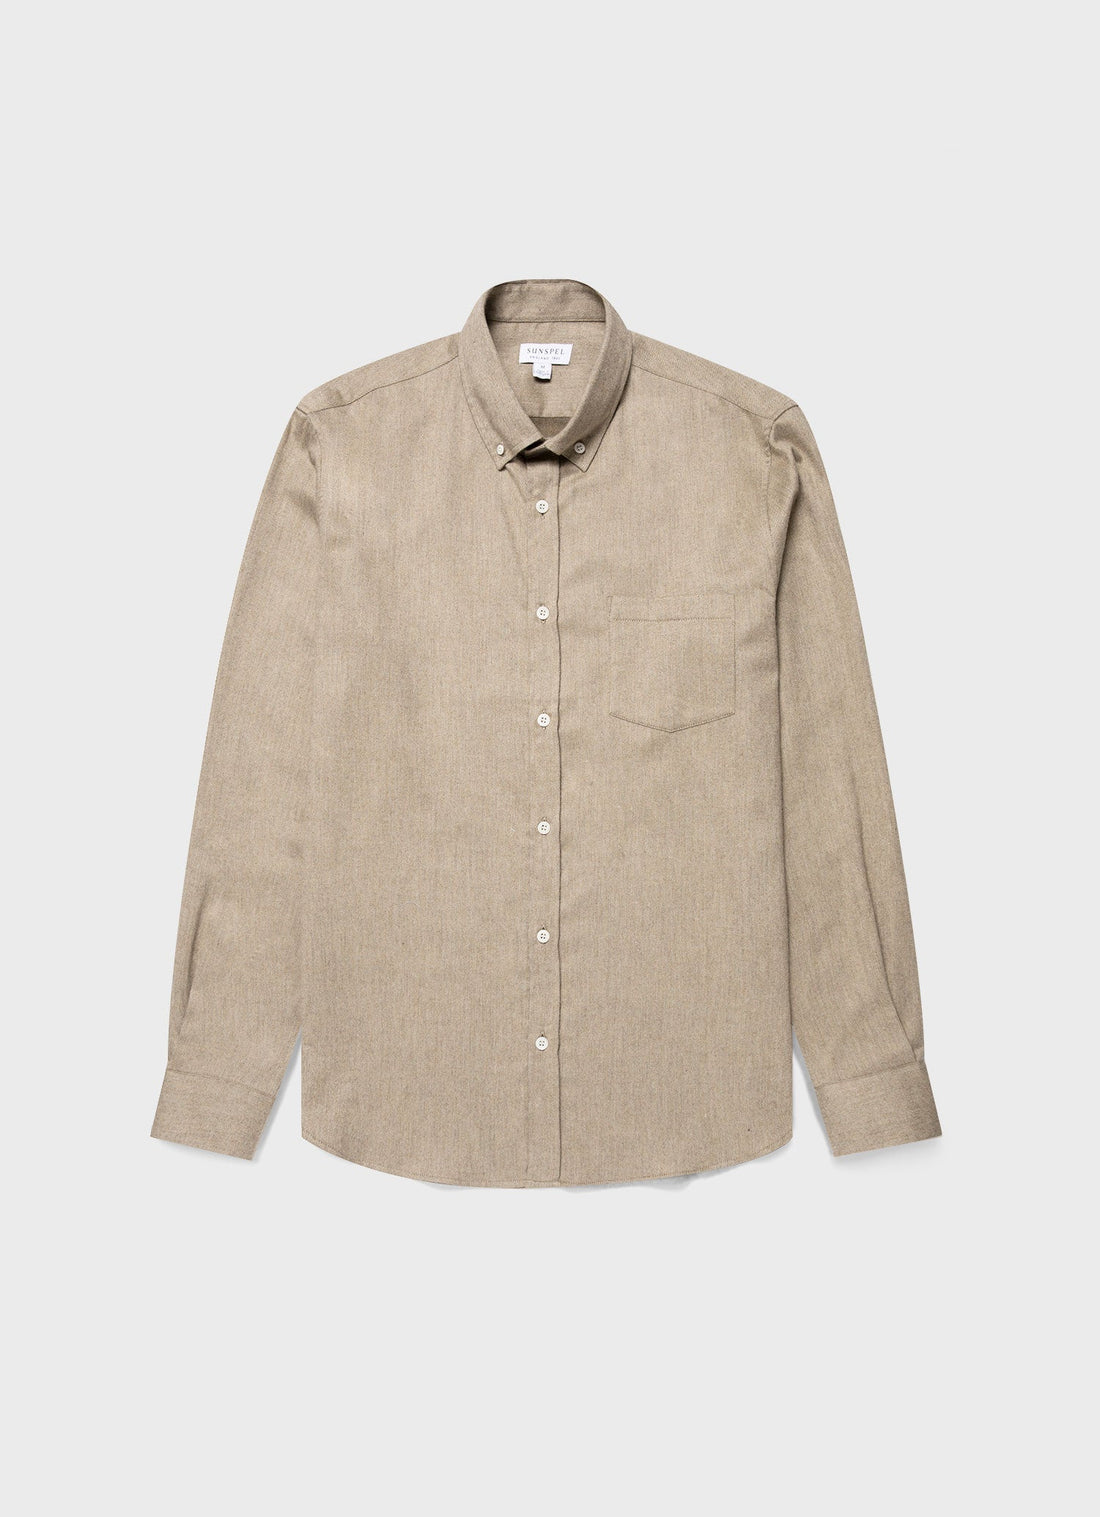 Men's Button Down Flannel Shirt in Sandstone